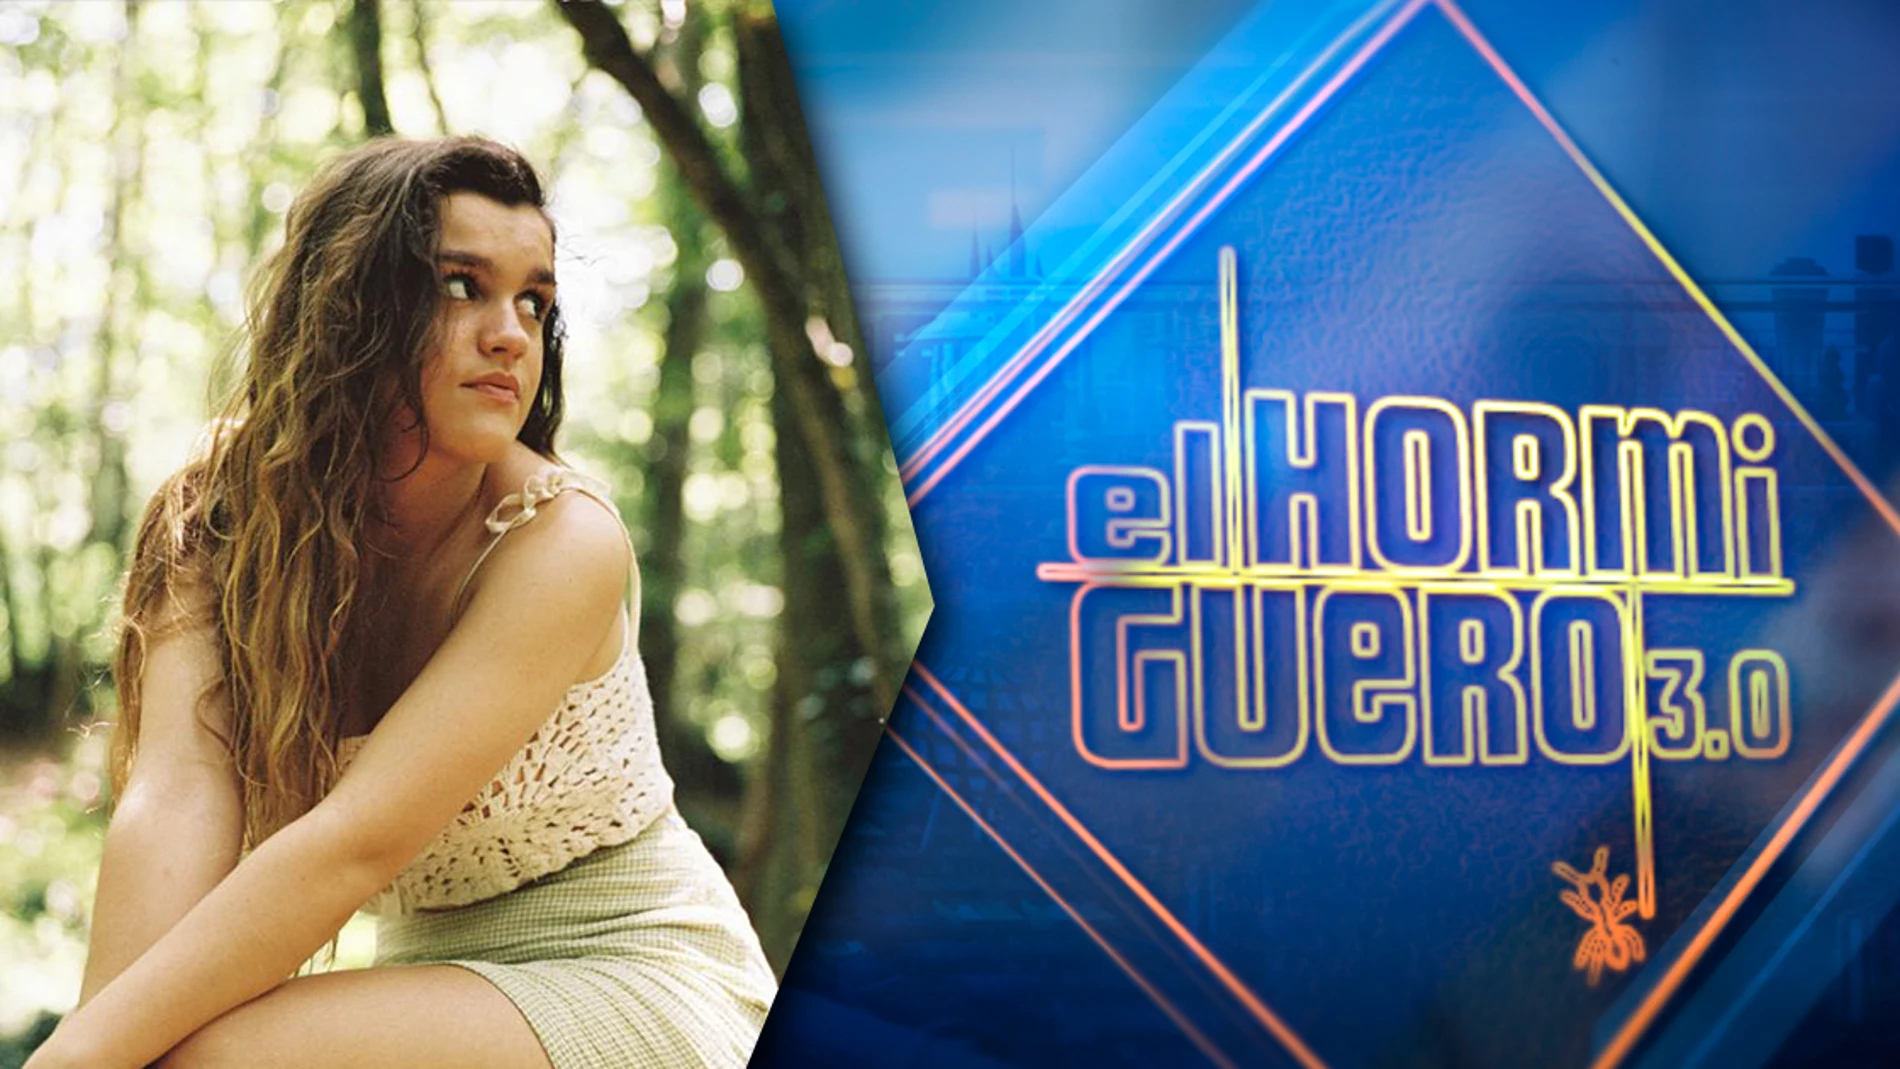 El jueves, Amaia Romero nos emocionará en la nueva temporada de 'El Hormiguero 3.0'